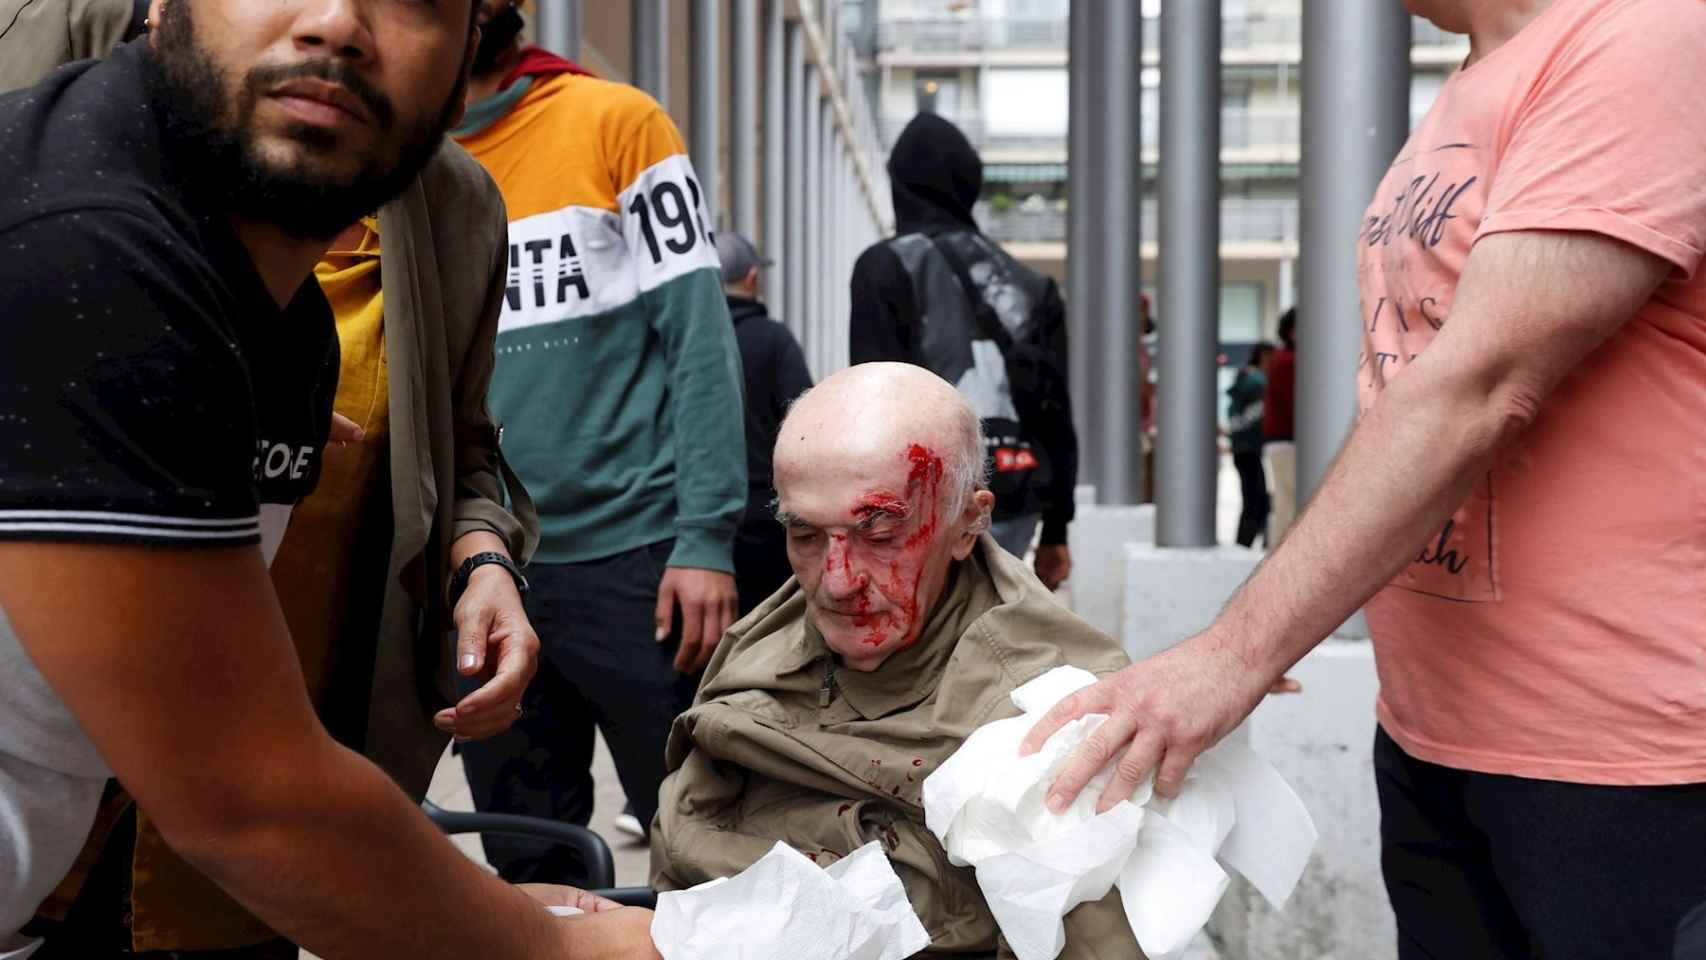 Un viandante resultó herido tras caer al suelo durante uno de los tumultos provocados por los enfrentamientos entre la policía y radicales en Mondragón, en el País Vasco / EFE